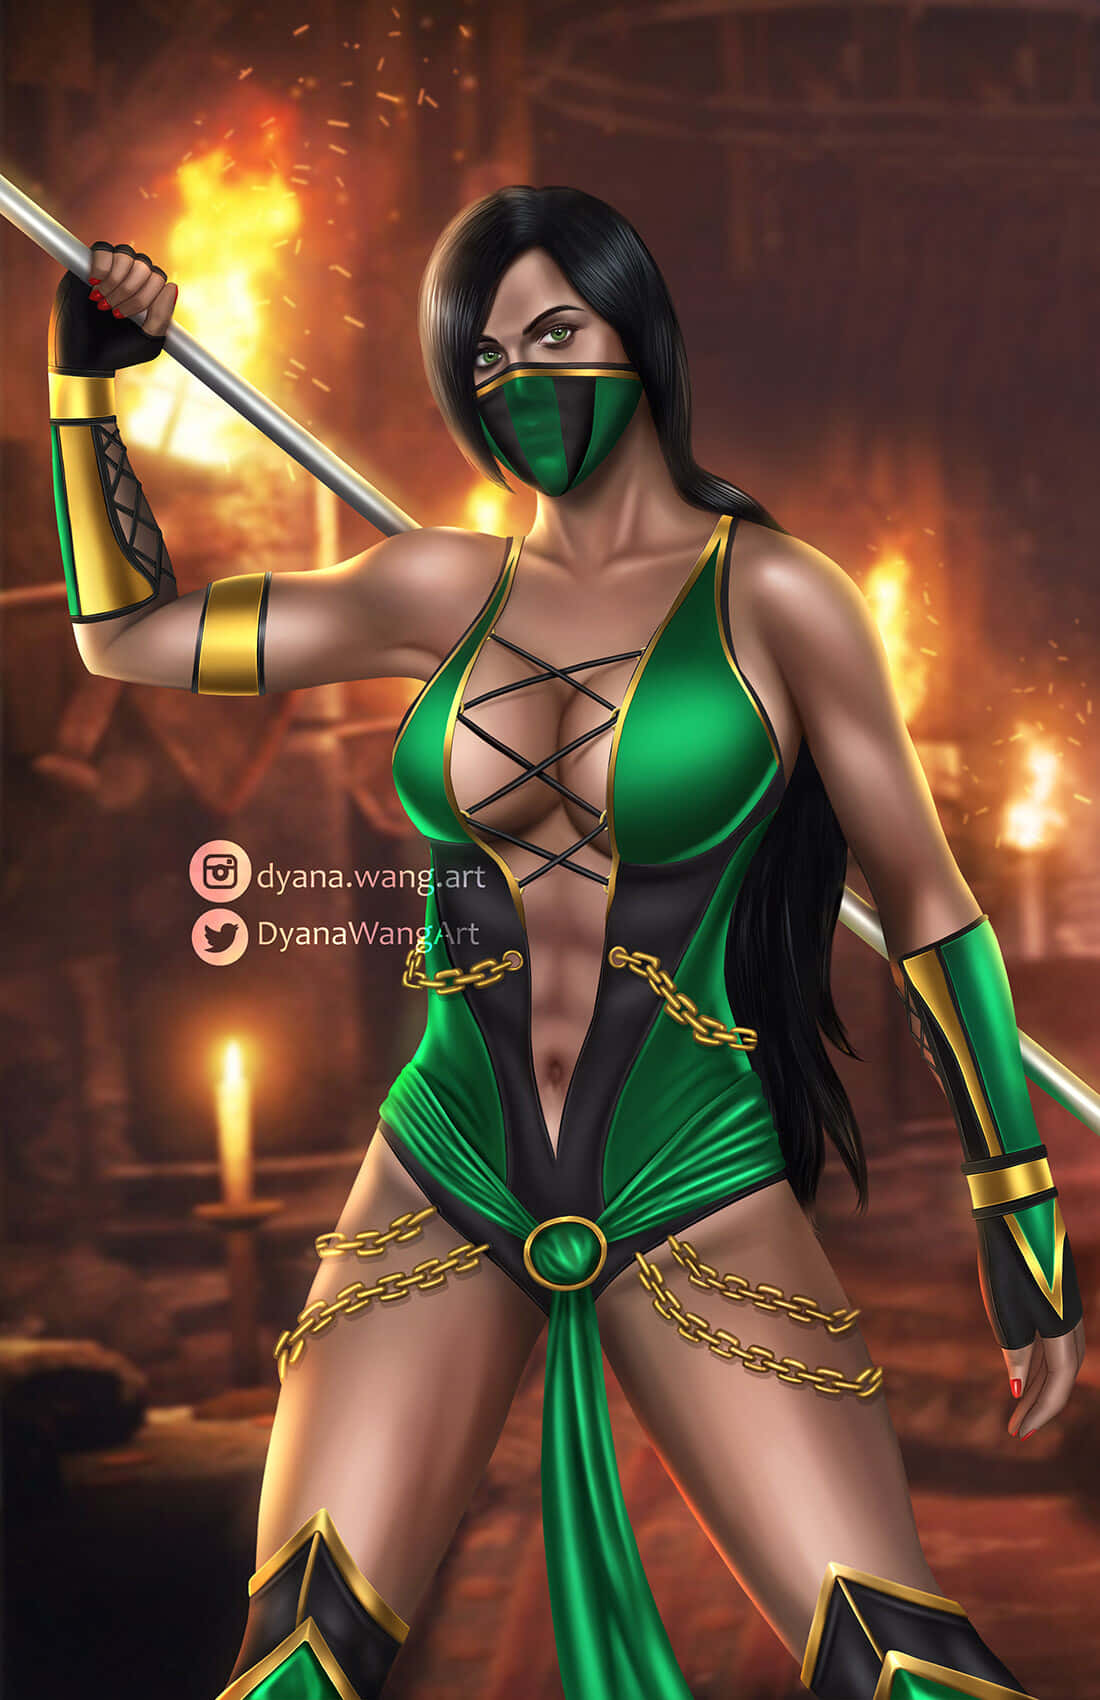 Mortalkombat Krigaren Jade I Aktion Wallpaper